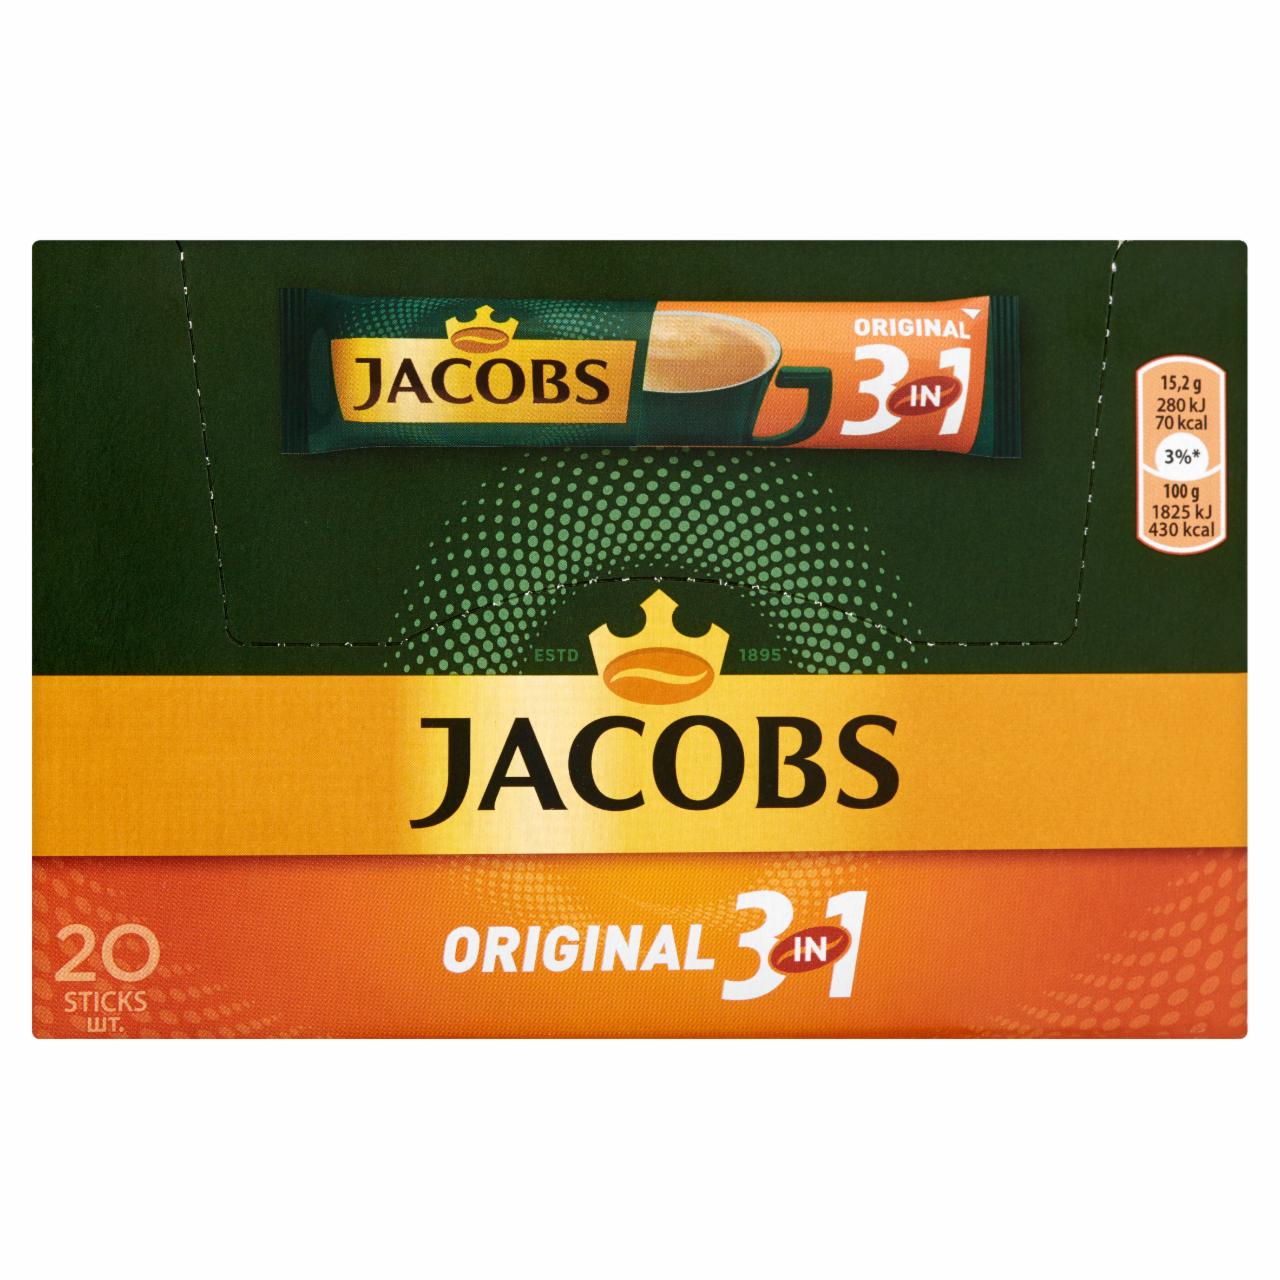 Zdjęcia - Jacobs Original 3in1 Rozpuszczalny napój kawowy 304 g (20 x 15,2 g)